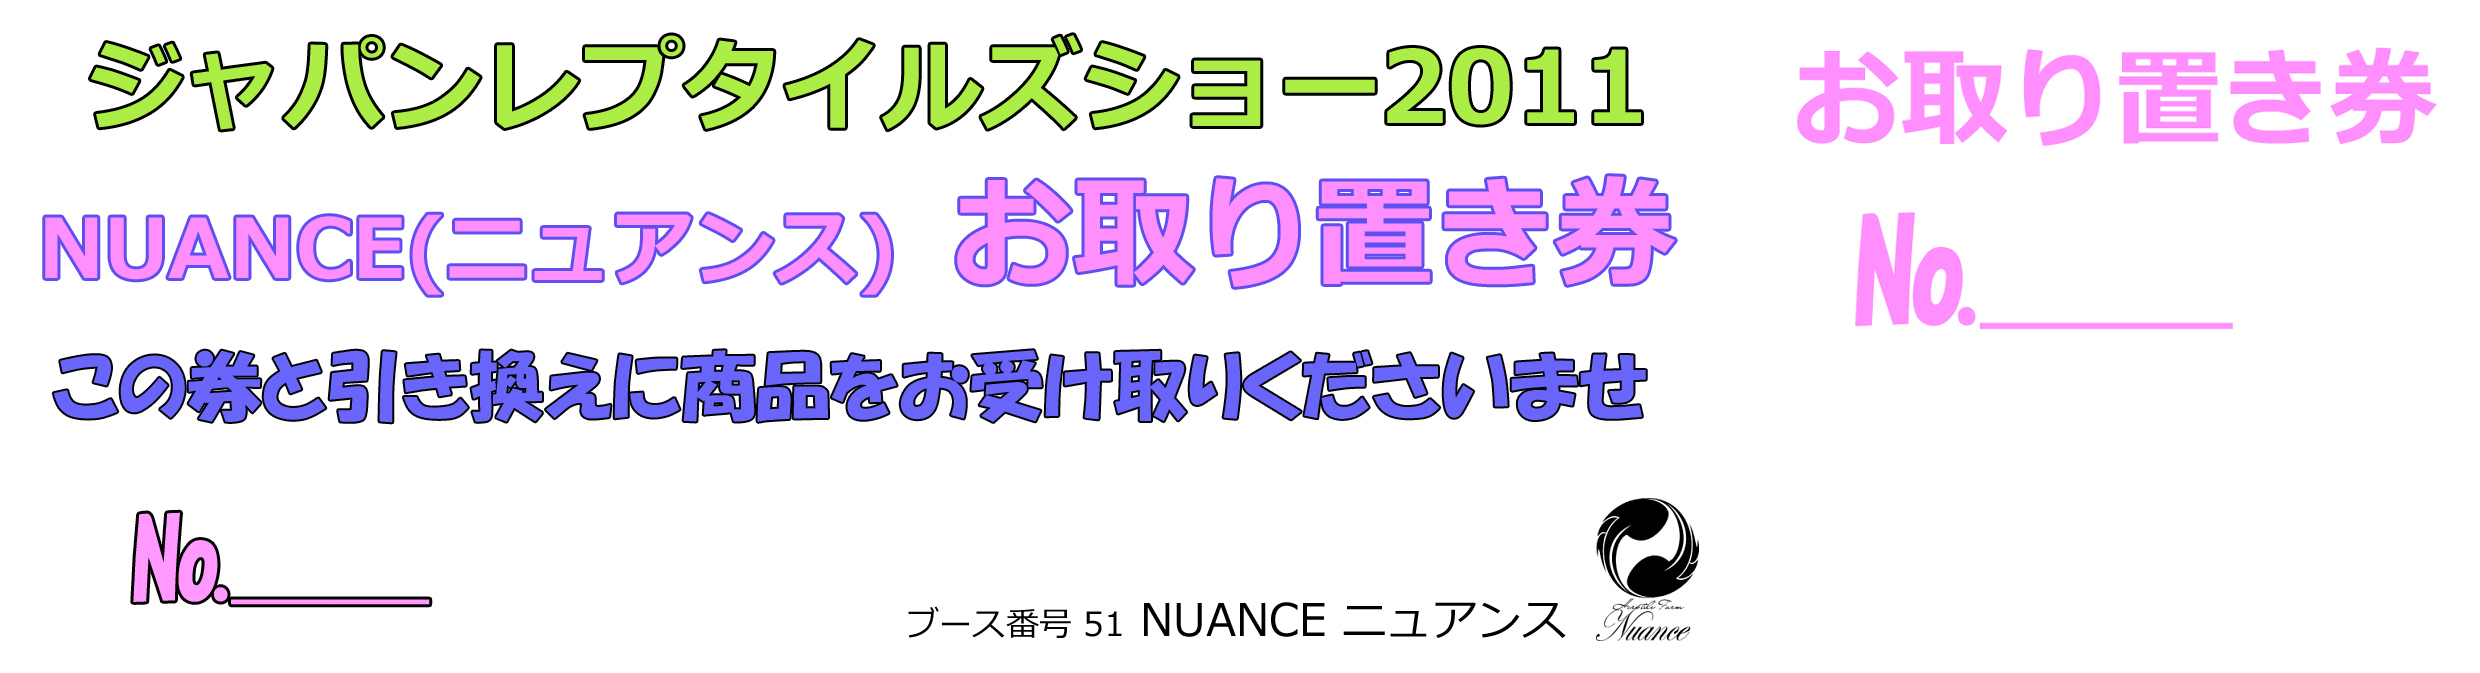 ジャパンレプタイルズショー2011お取り置き券 - ツノガエルのブリーディング施設 NUANCE ニュアンス のブログ